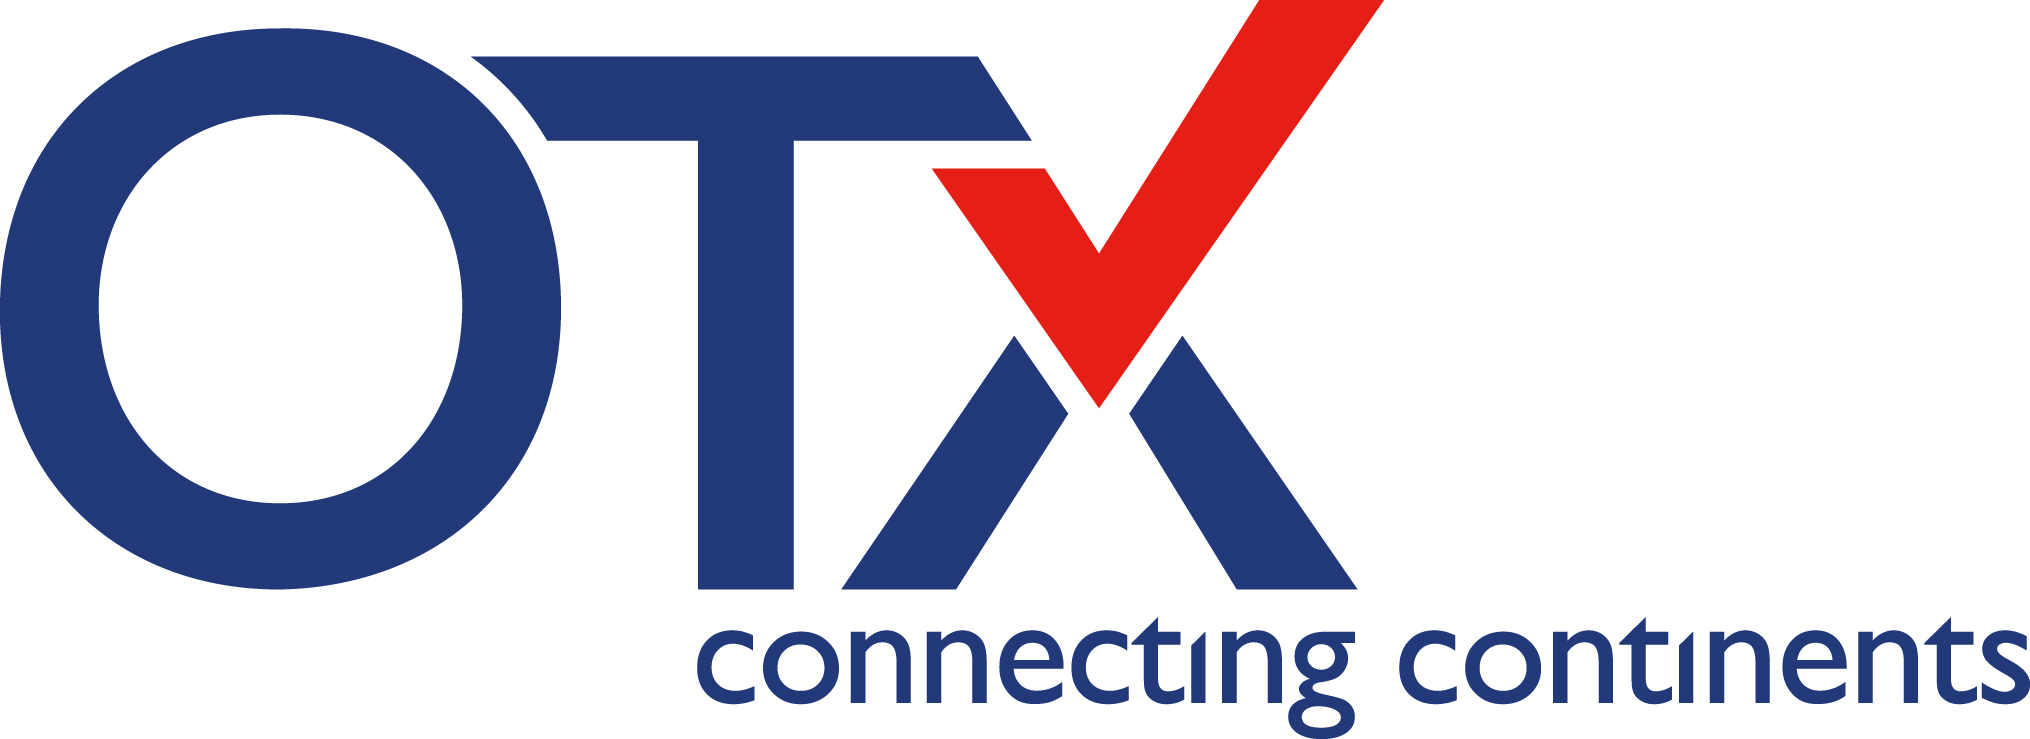 Logo OTX